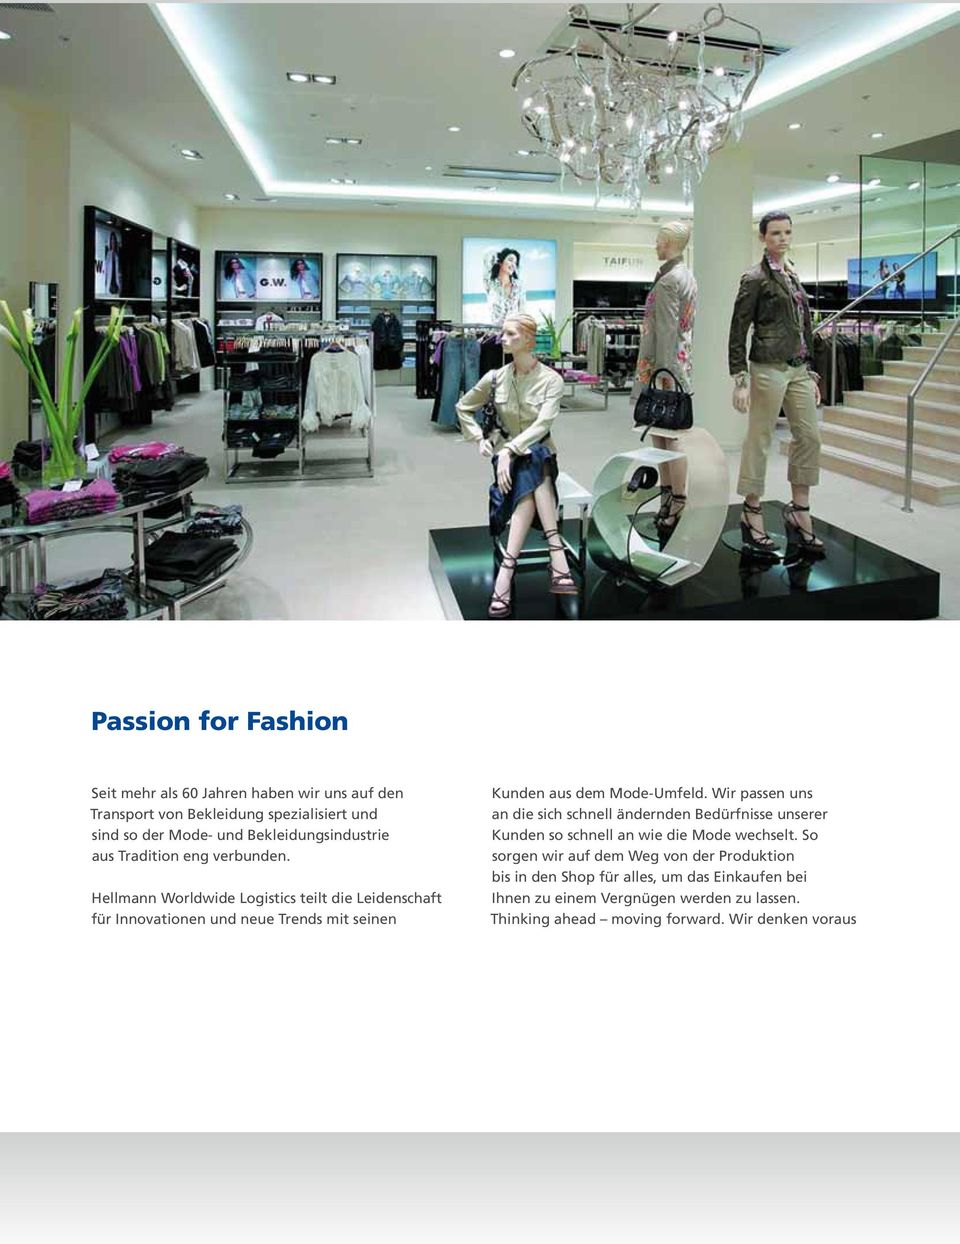 Hellmann Worldwide Logistics teilt die Leidenschaft für Innovationen und neue Trends mit seinen Kunden aus dem Mode-Umfeld.